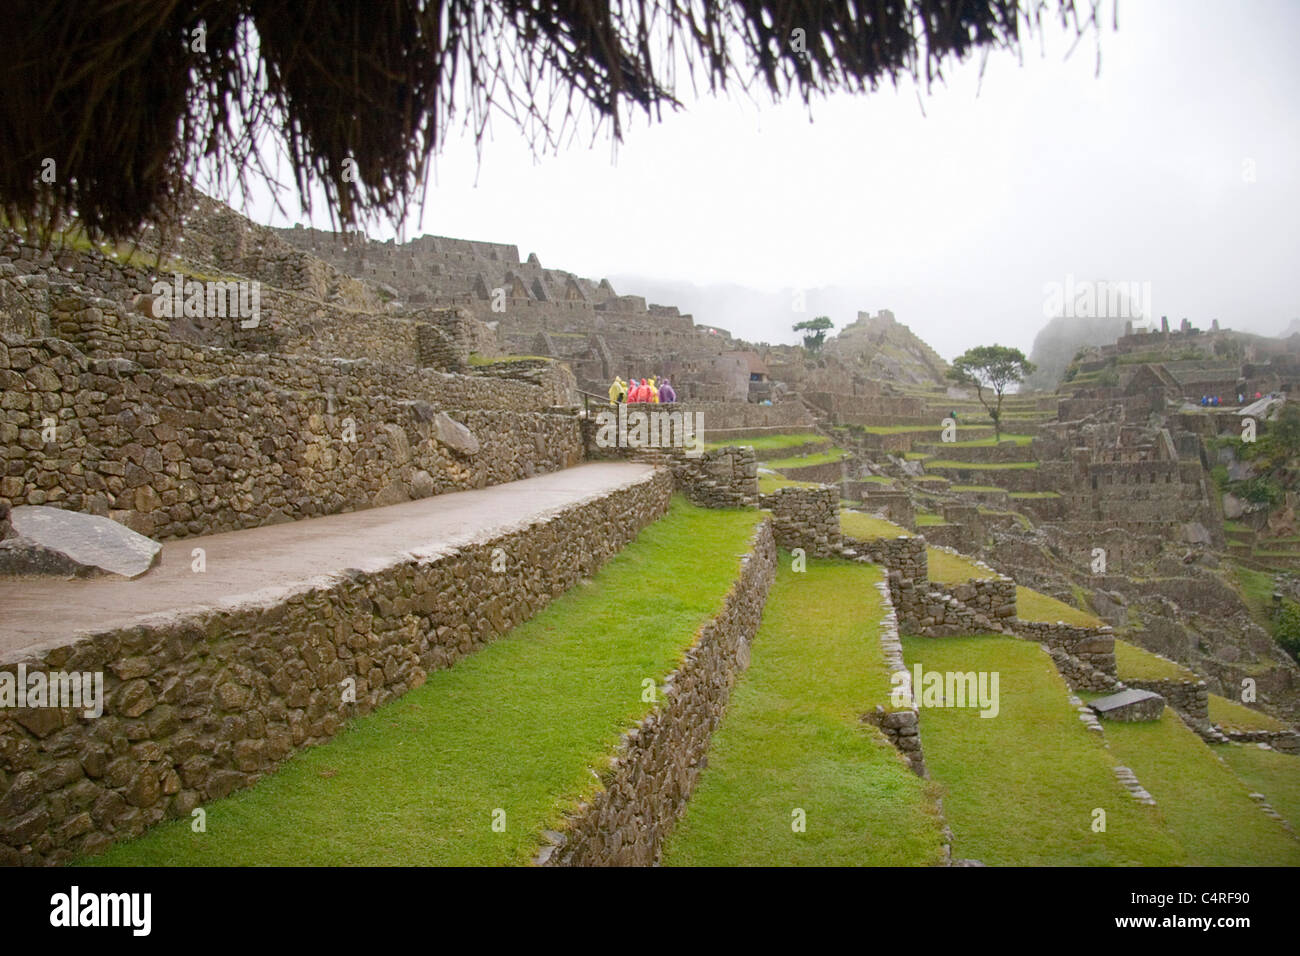 The famed Incan ruins of Machu Picchu, Peru, South America Stock Photo